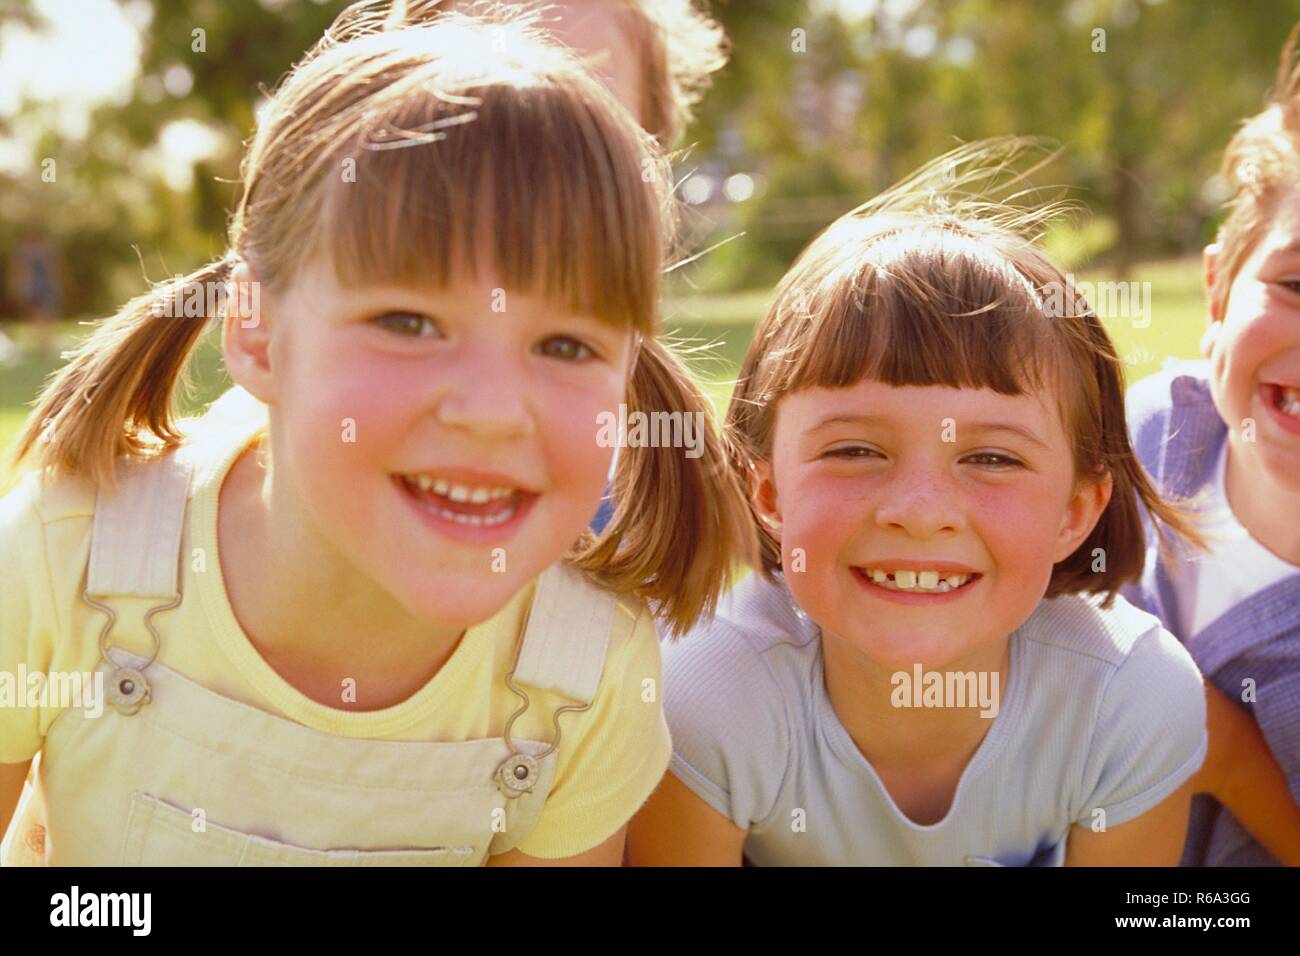 Parkszene, Ritratto, Nahaufnahme, 2 dunkelblond Maedchen, 6 Jahre alt, bekleidet mit hellgelben und hellblauen T-Shirtszeigen ihre Zaehne Foto Stock